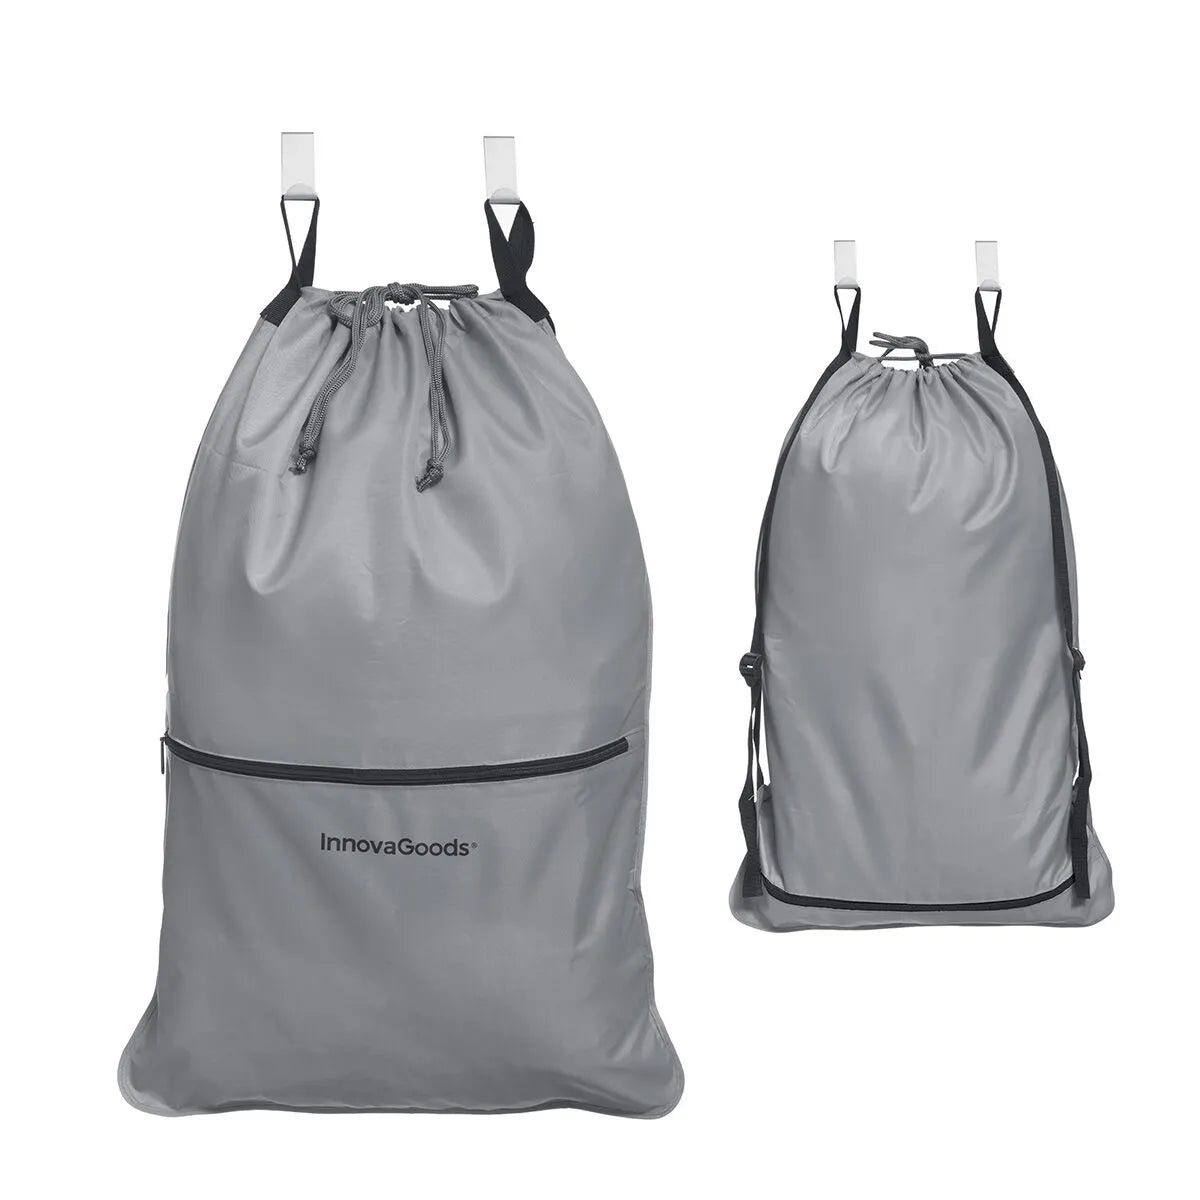 En grå skittentøyssekk med 2 kroker for oppheng og enkel mulighet for å bære den på ryggen